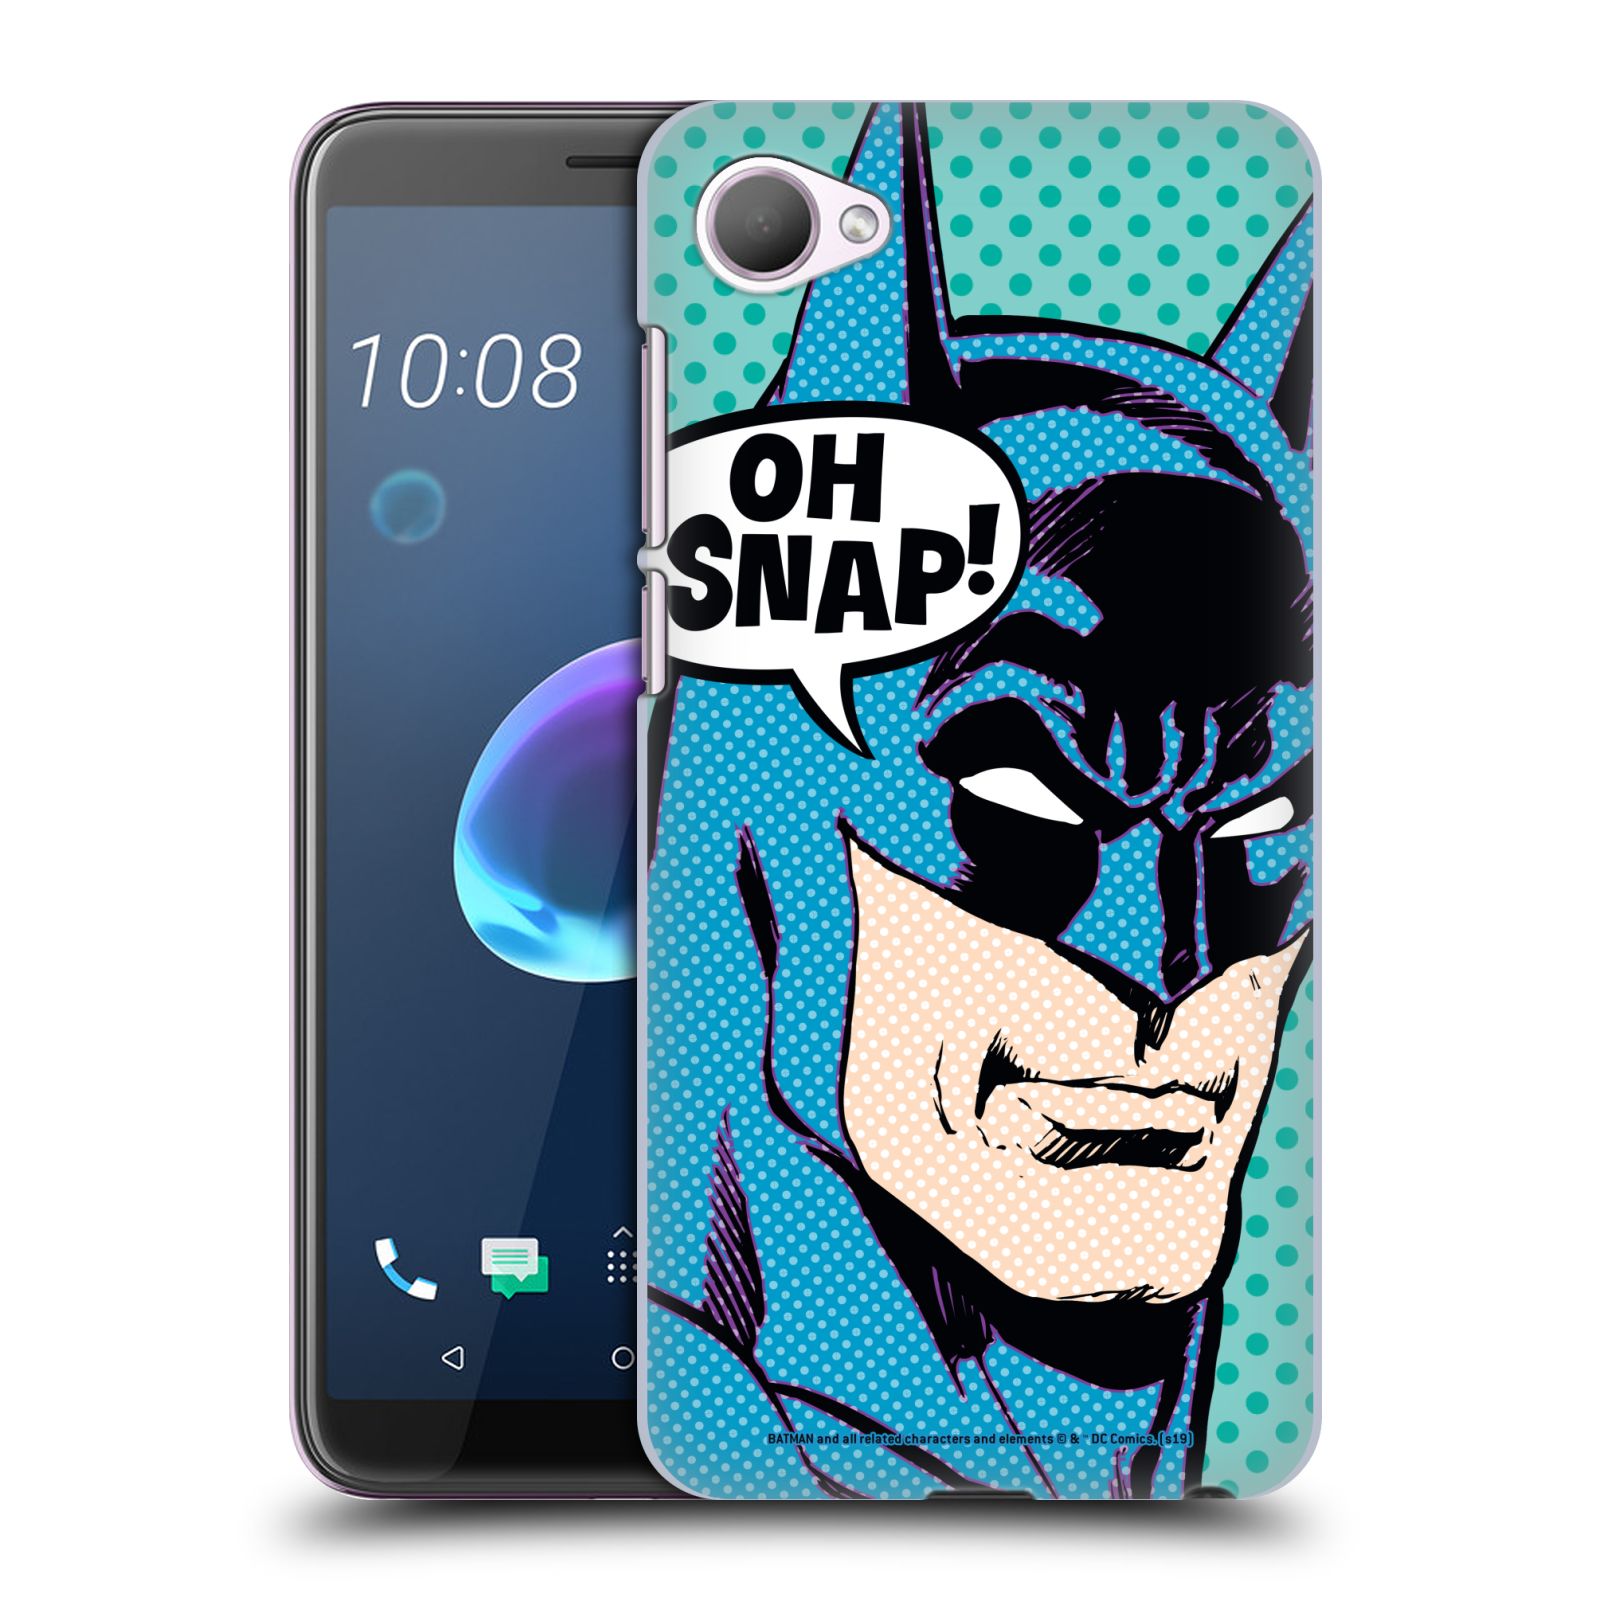 Pouzdro na mobil HTC Desire 12 / Desire 12 DUAL SIM - HEAD CASE - DC komix Batman Pop Art tvář